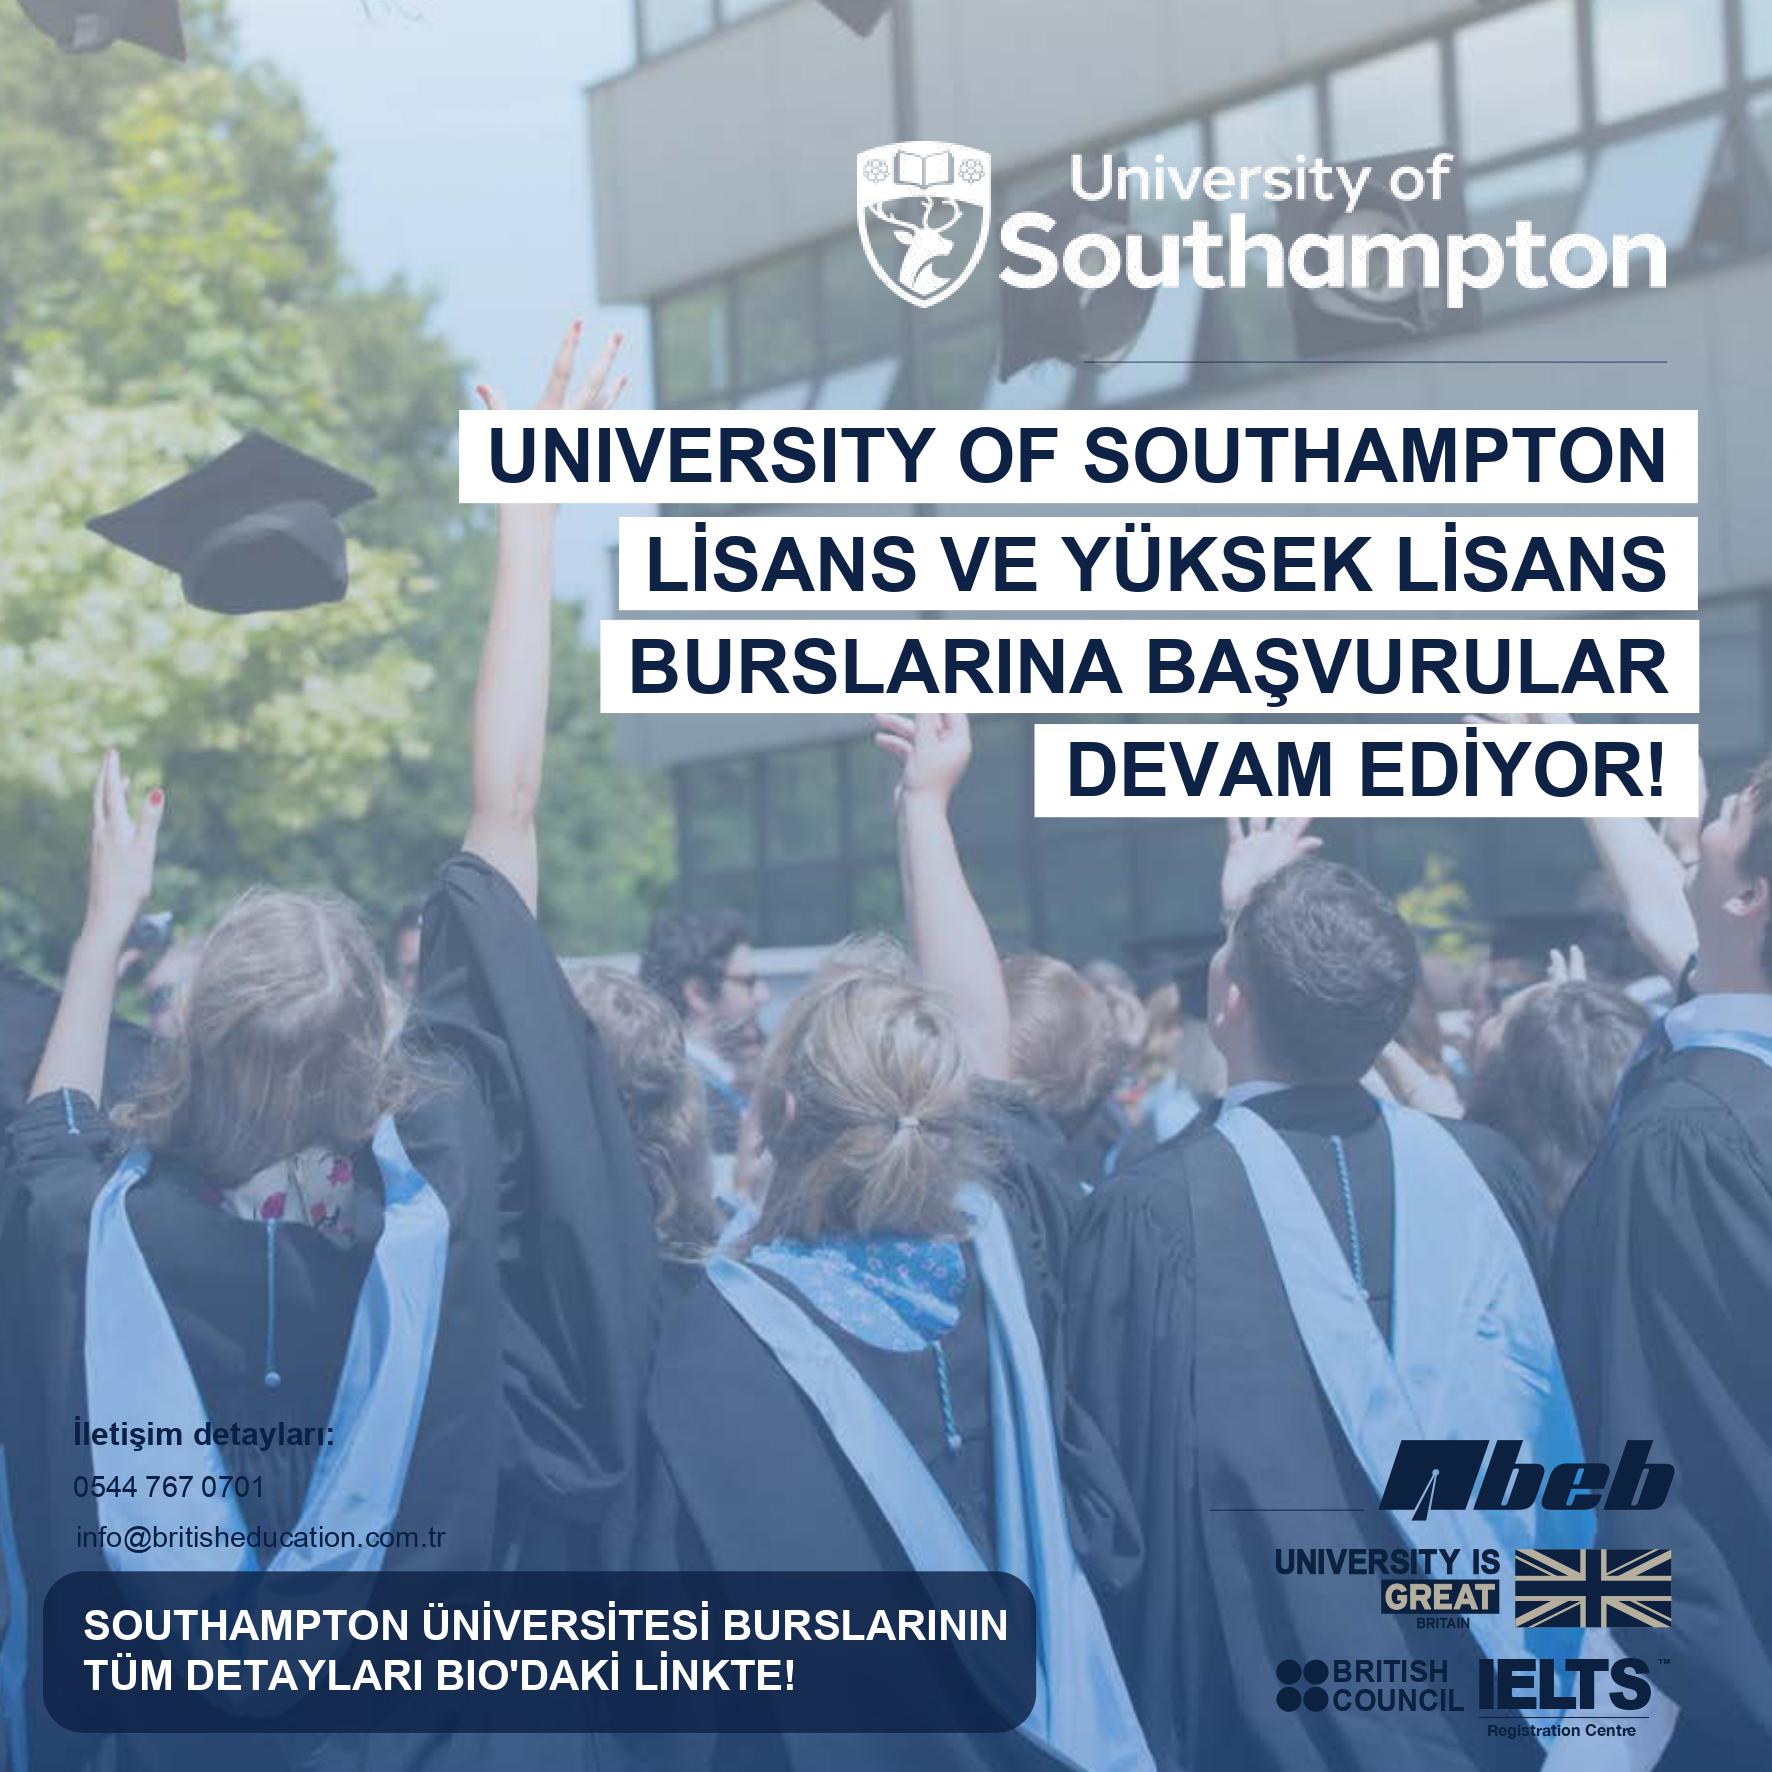 Dünyanın en yüksek sıralamalı 80 Üniversitesi içerisinde yer alan University of Southampton'dan mezun olan öğrencilerin kutlama yaptıkları görüntü ve Üniversitenin burslarıyla ilgili bilgilendirmenin yer aldığı yazı ile logolar